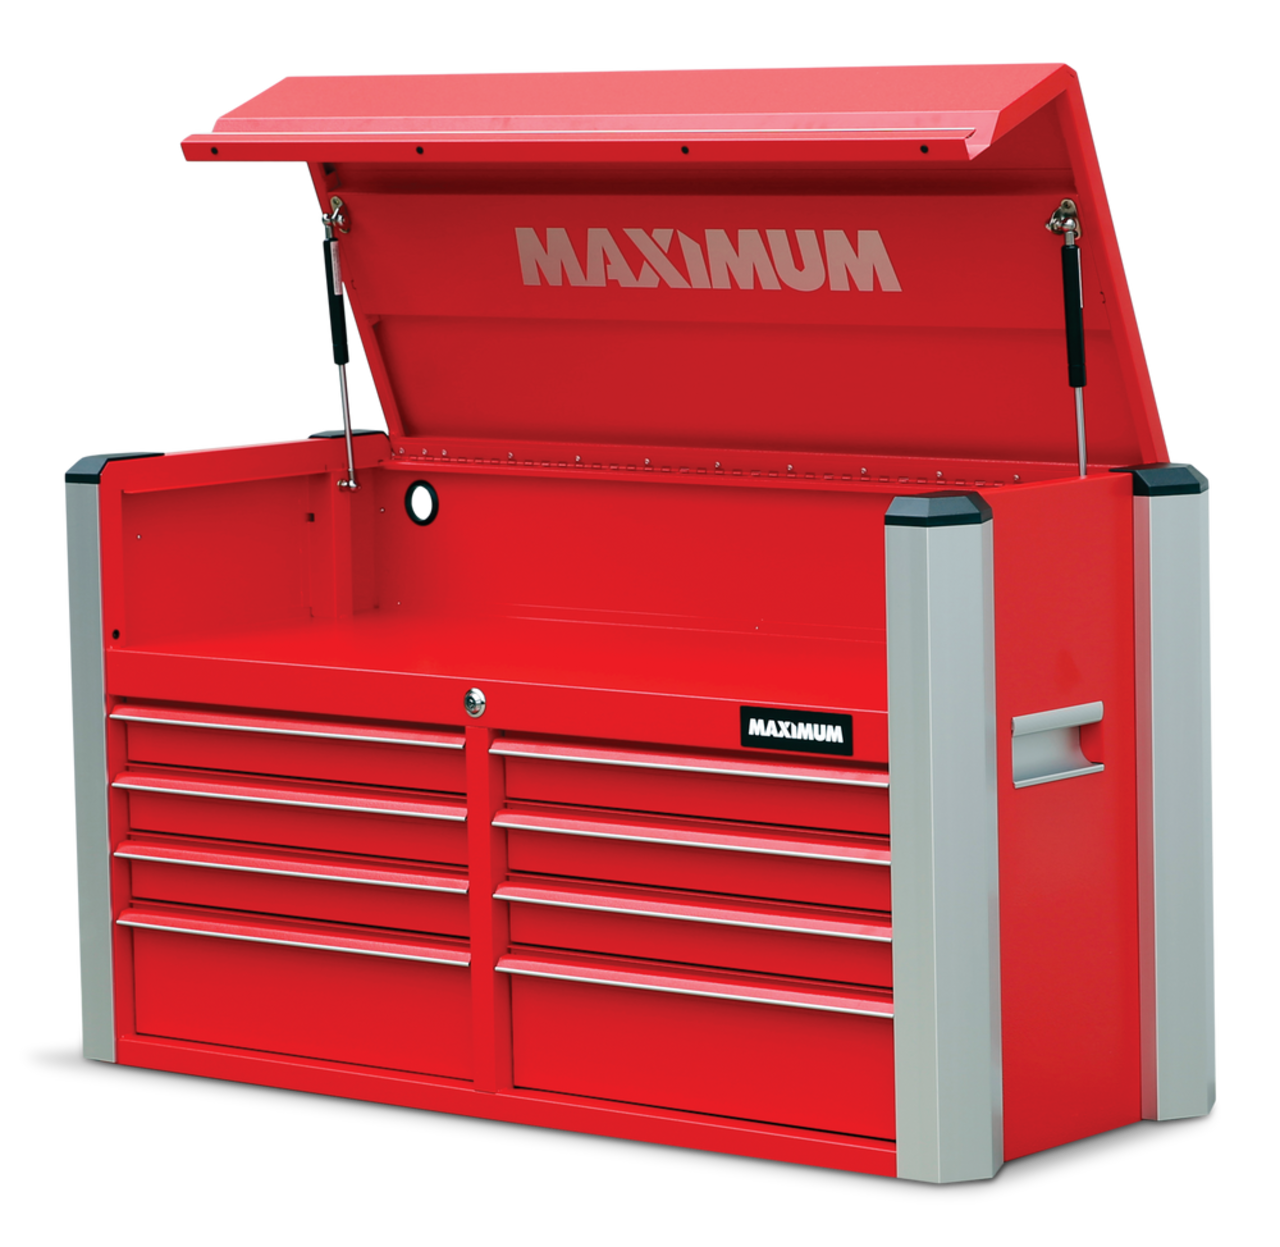 Coffre à outils MAXIMUM à 8 tiroirs, rouge, 47 po